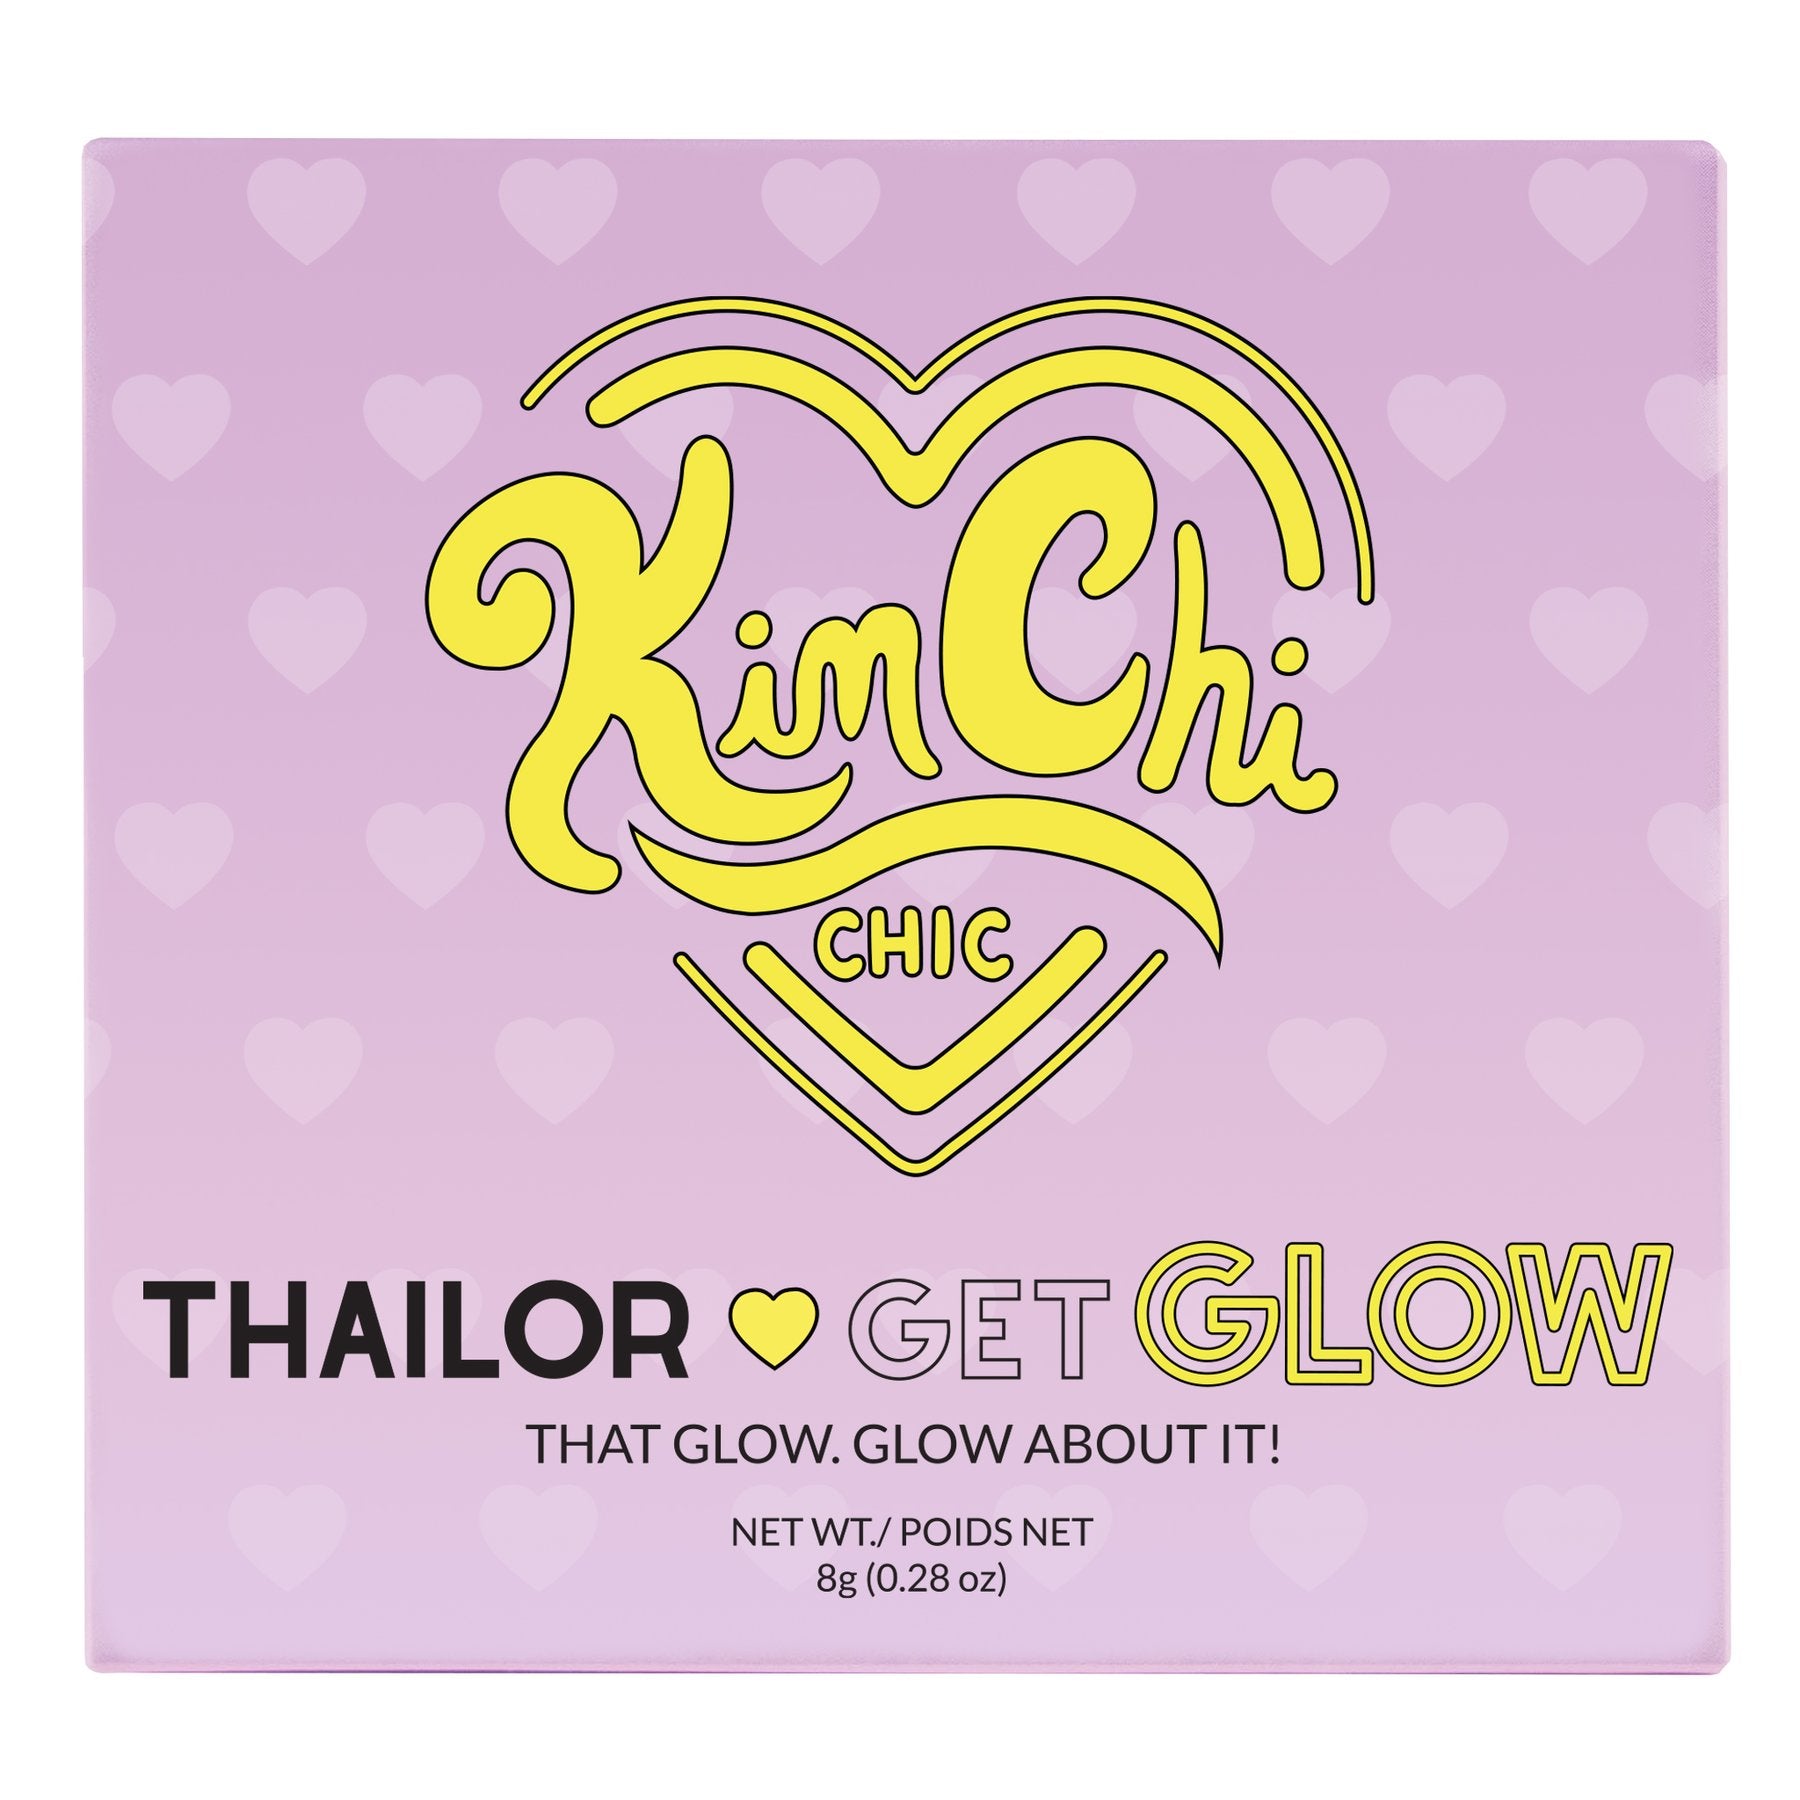 KimChi Chic - Thailor Get Glow St. Tropez Glow